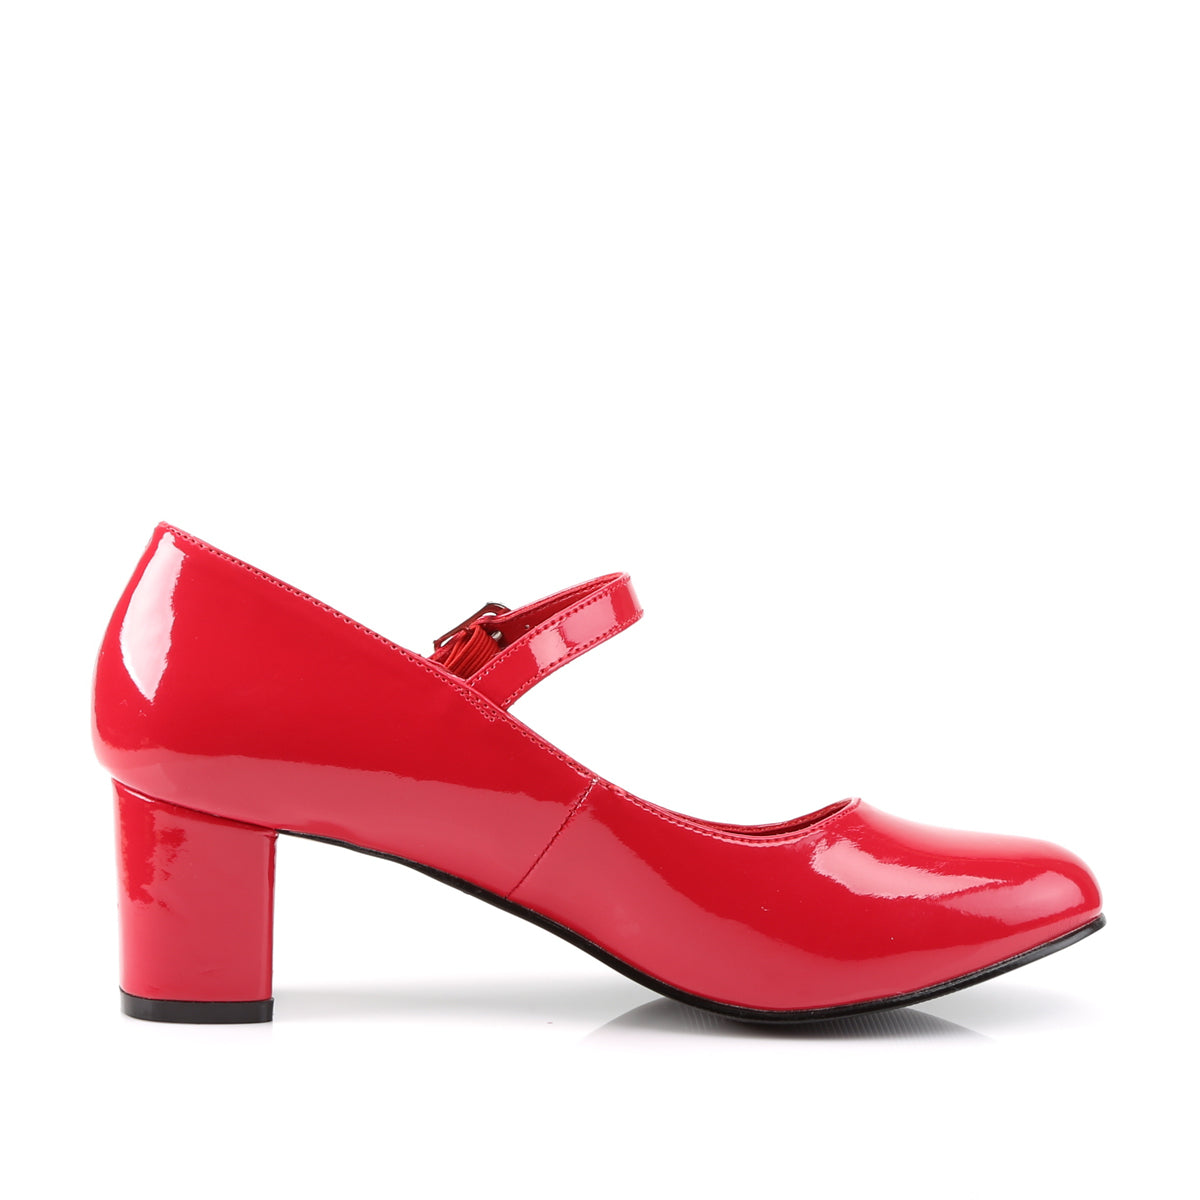 SCHOOLGIRL-50 2 Inch Heel Red Women's Costume Shoes Funtasma Costume Shoes Fancy Dress